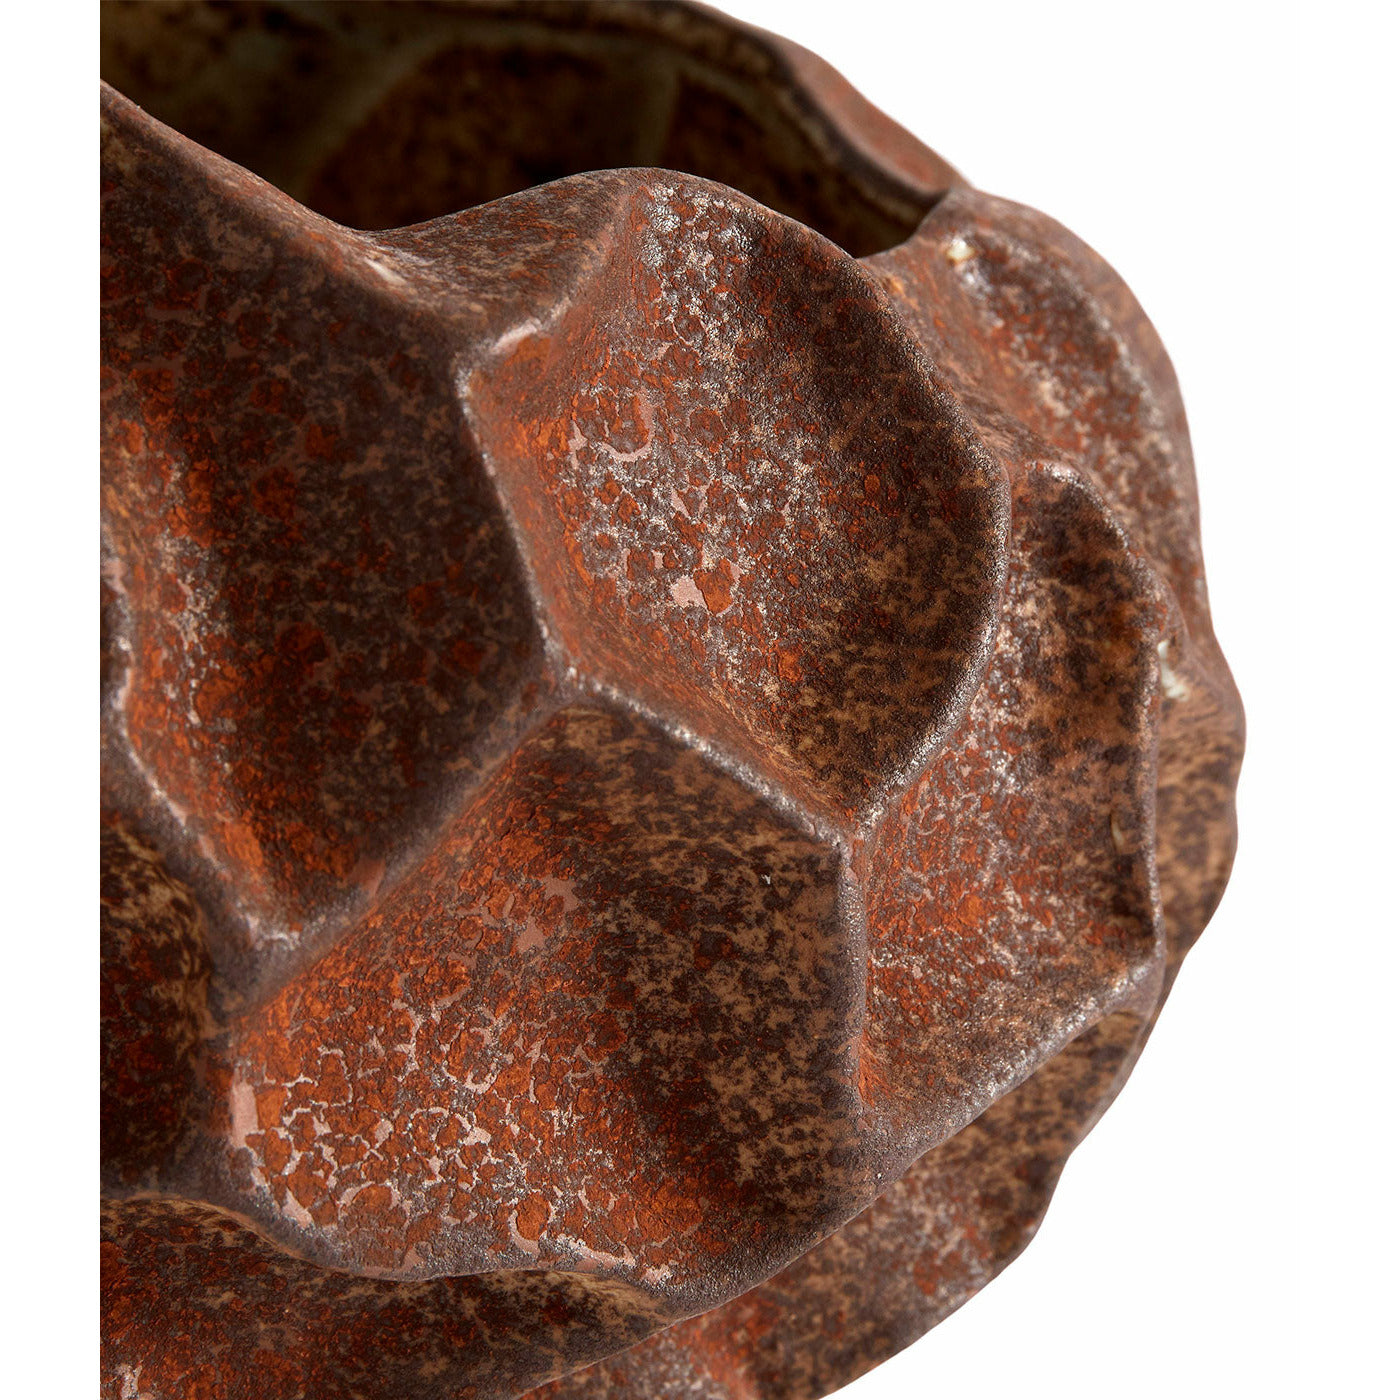 Muubs Krukke Soil - Rust - Keramik - H: 11,5 Ø: 18 cm - DesignGaragen.dk.